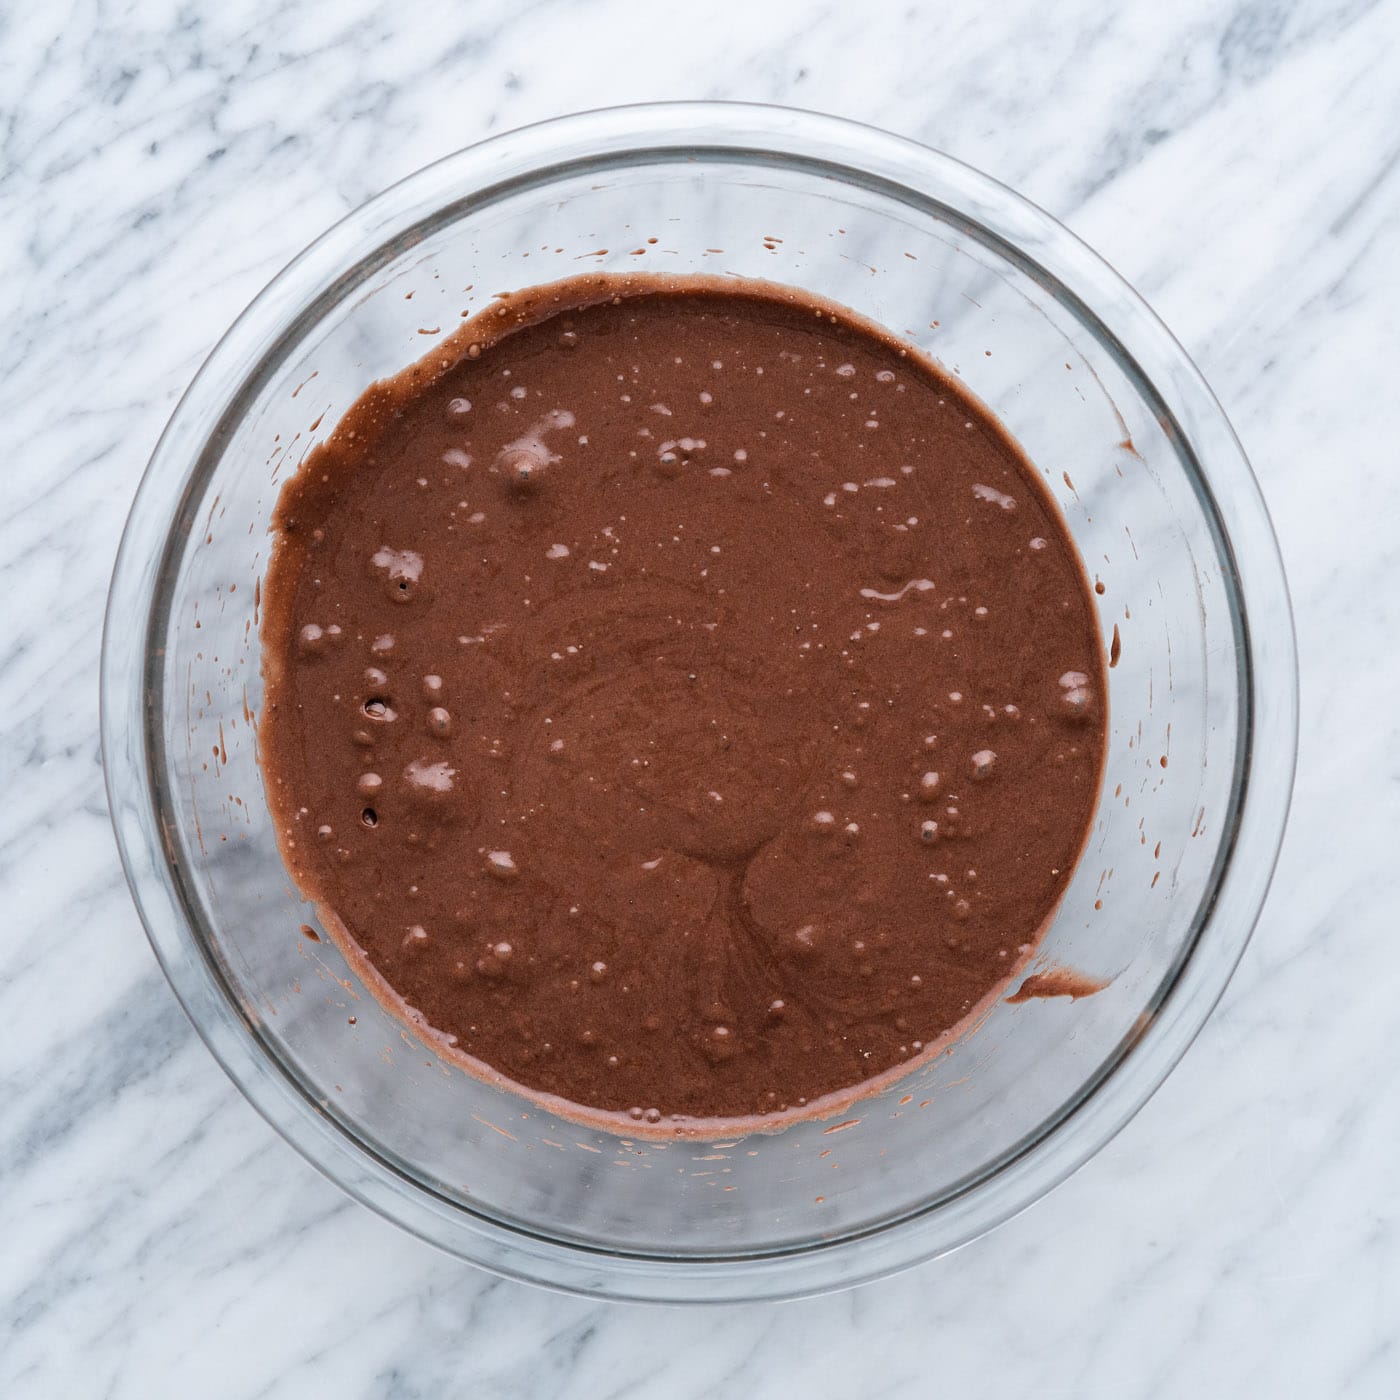 prepared chocolate cake mix in a bowl